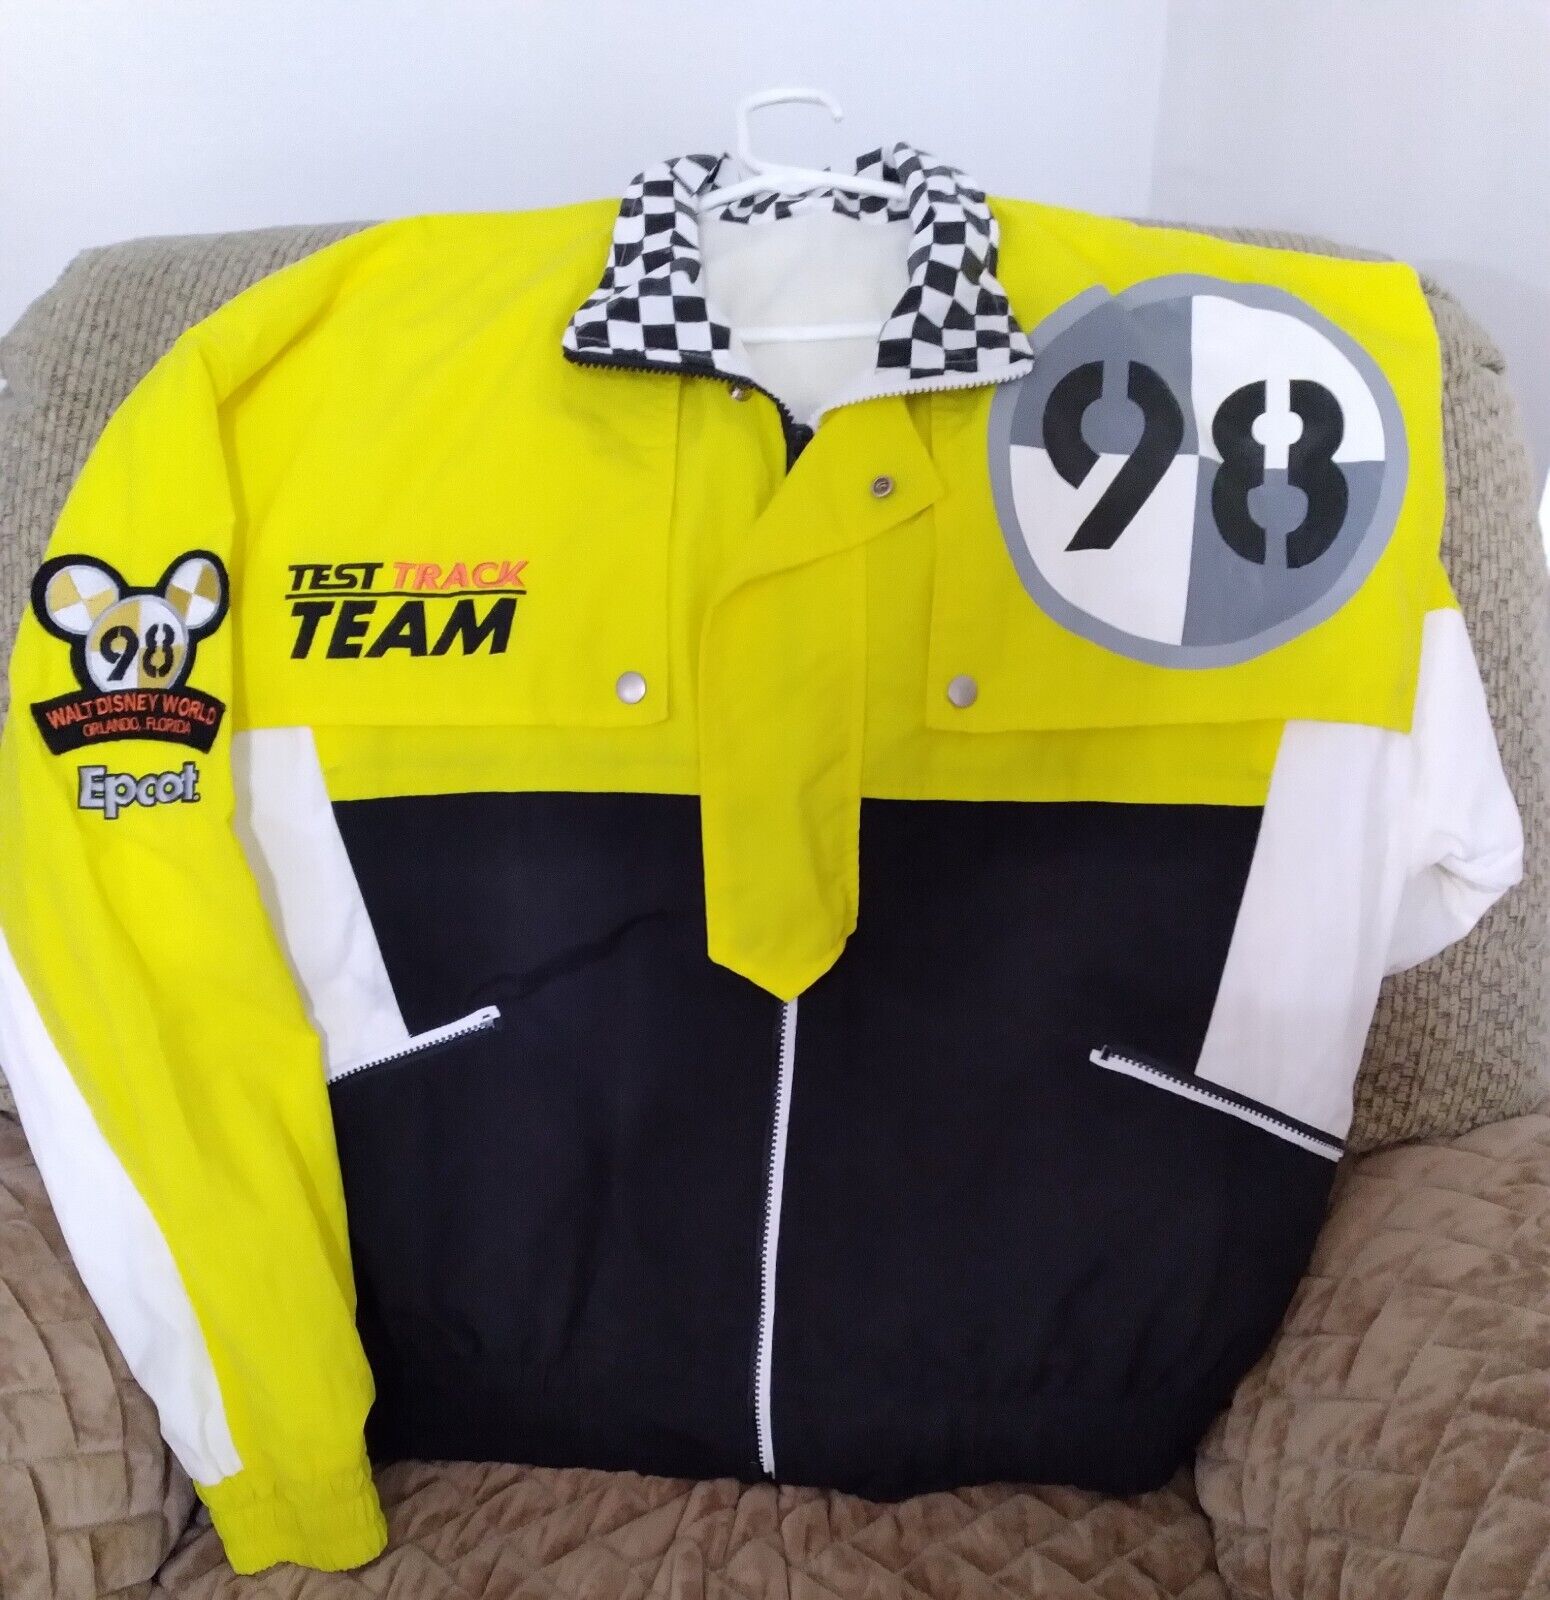 Elusively Rare Disney's Epcot Test Track Team Jacket 1998 (Yellow,Black, White)